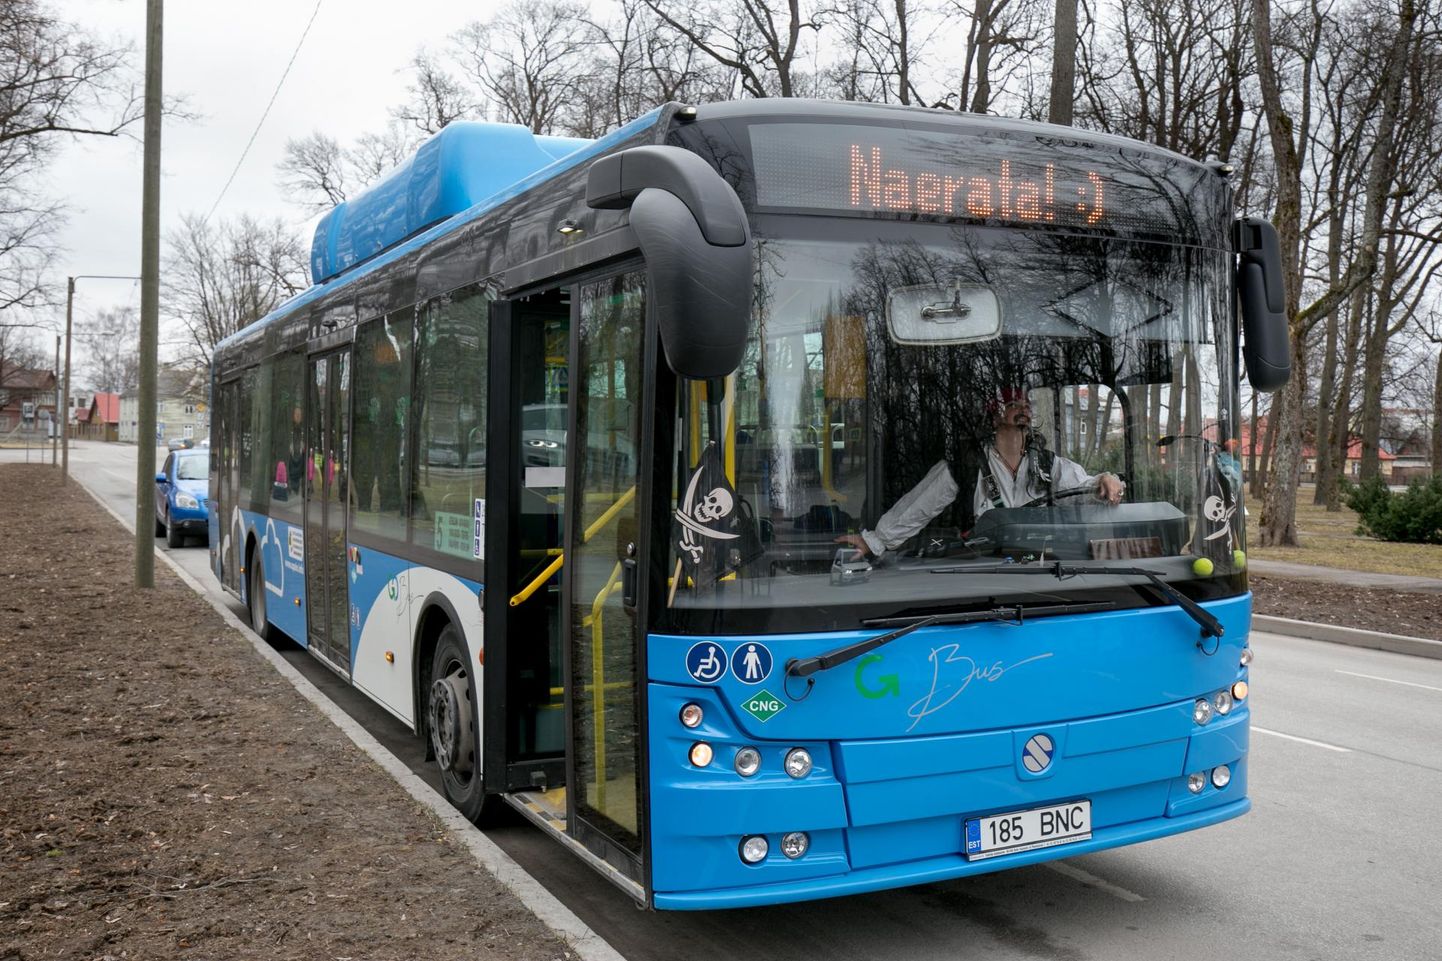 Praegu kasutatakse Pärnu linnabussides Rakveres tehtud gaasi. Targa linna klastriga ühinedes soovitakse tarvitusele võtta veel inovaatilisi lahendusi.